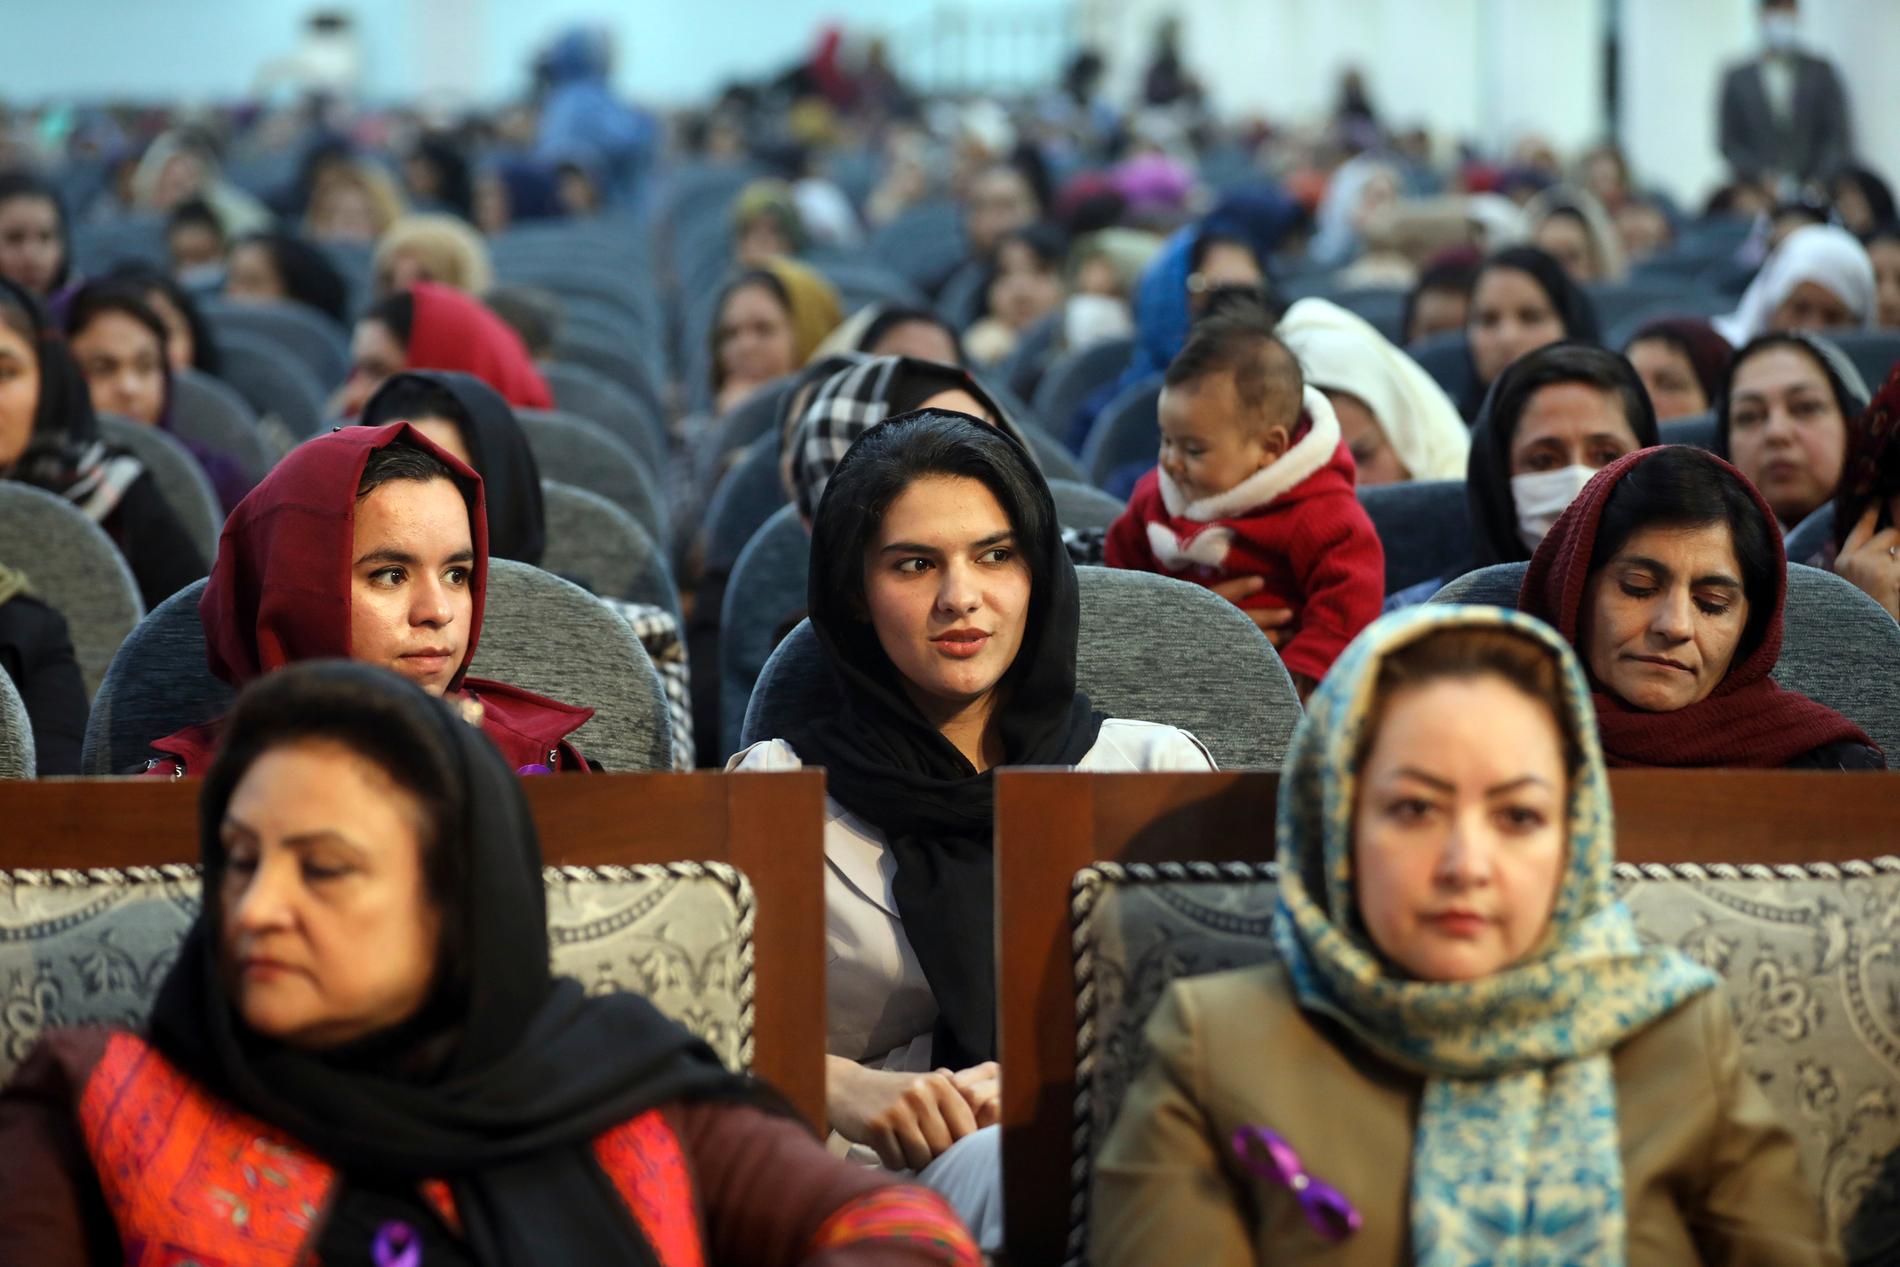 Deltagare vid ett evenemang med anledning av internationella kvinnodagen i Afghanistans huvudstad Kabul i mars.